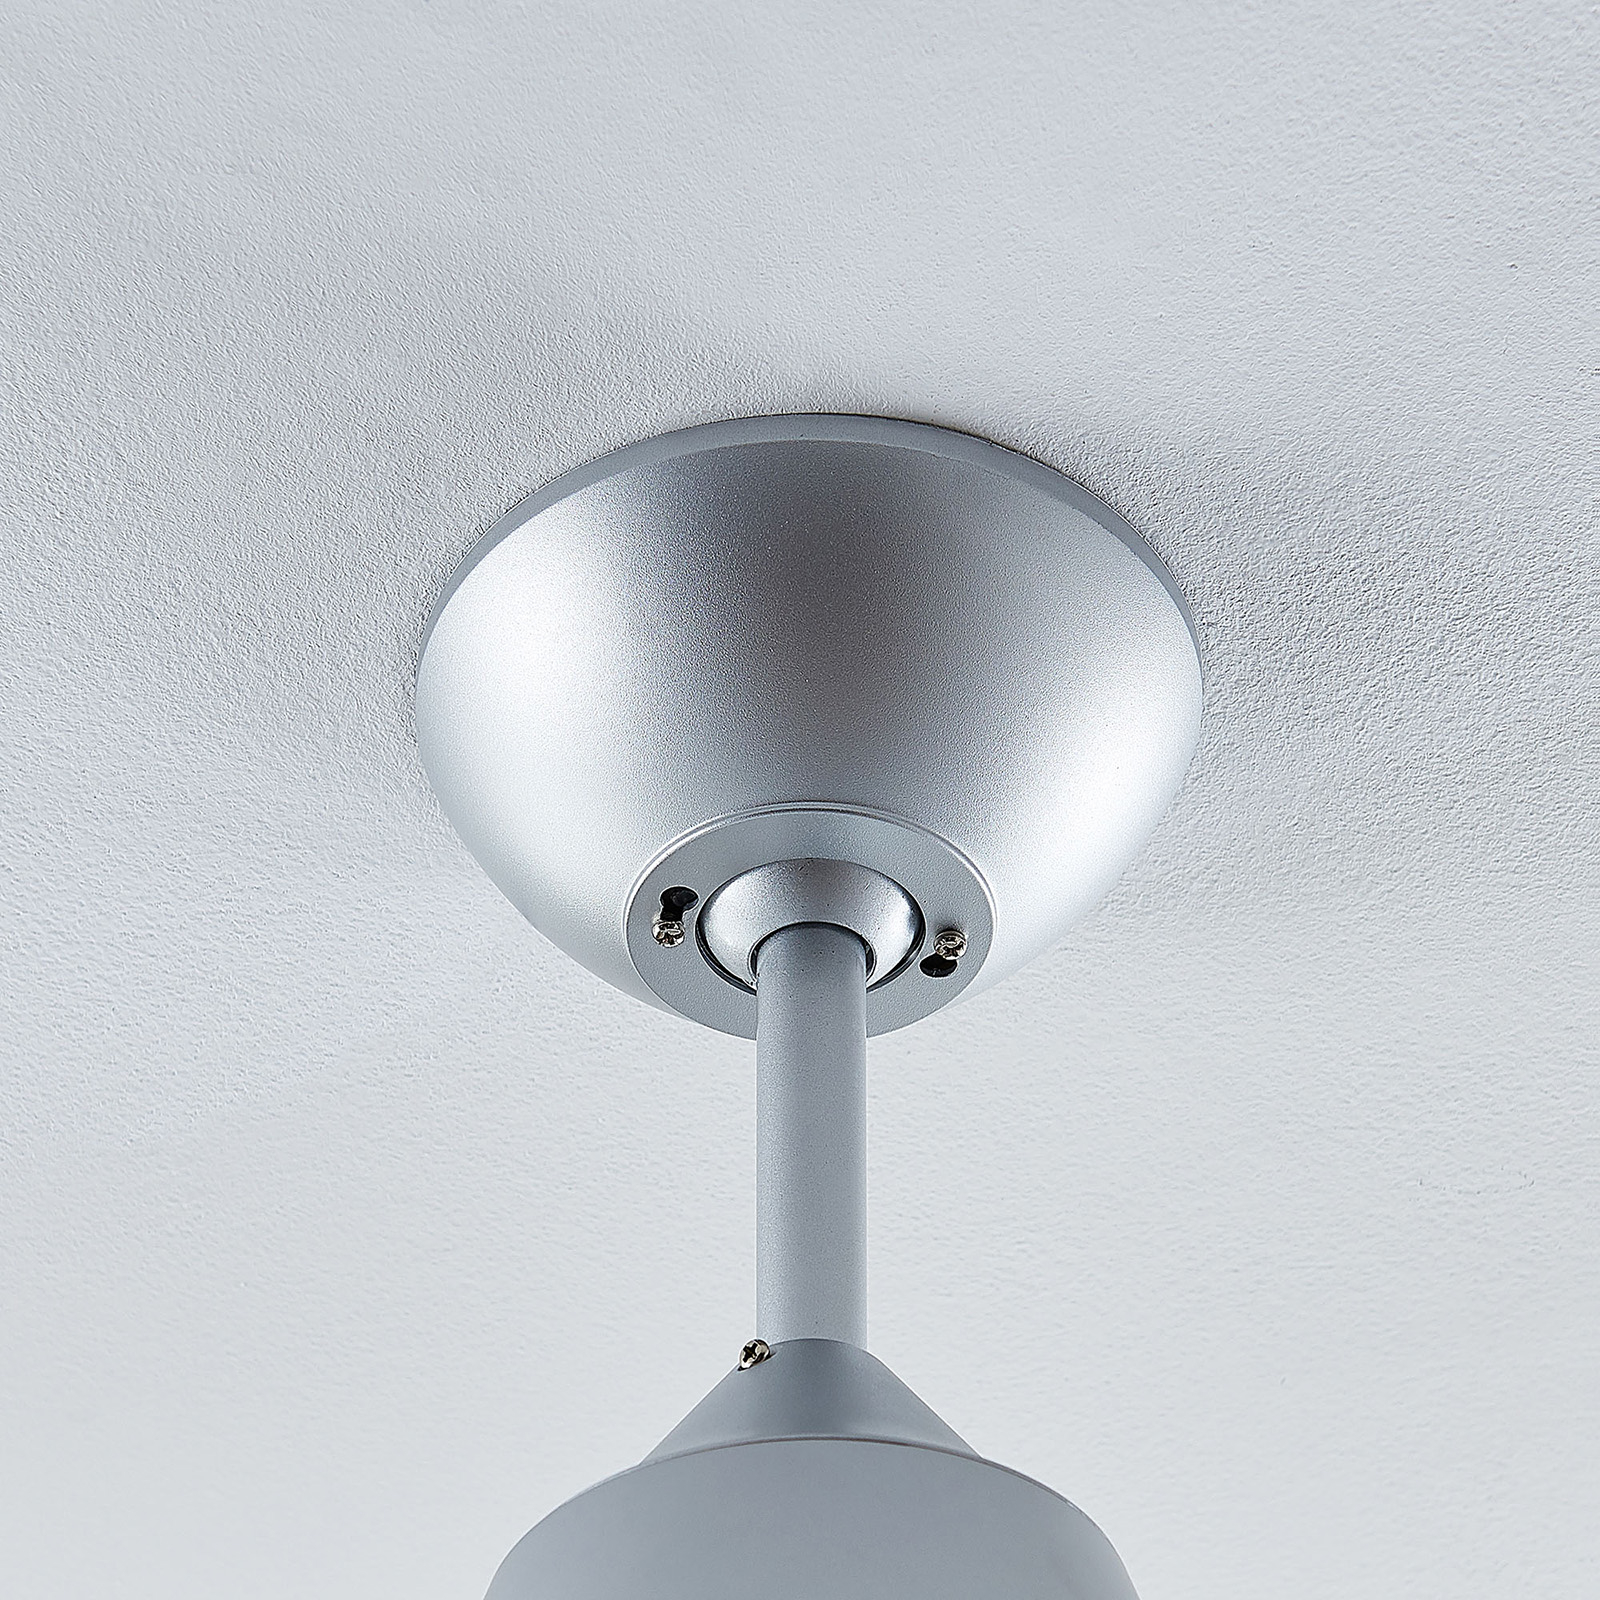 Starluna Pira LED ceiling fan, 3 blades silver